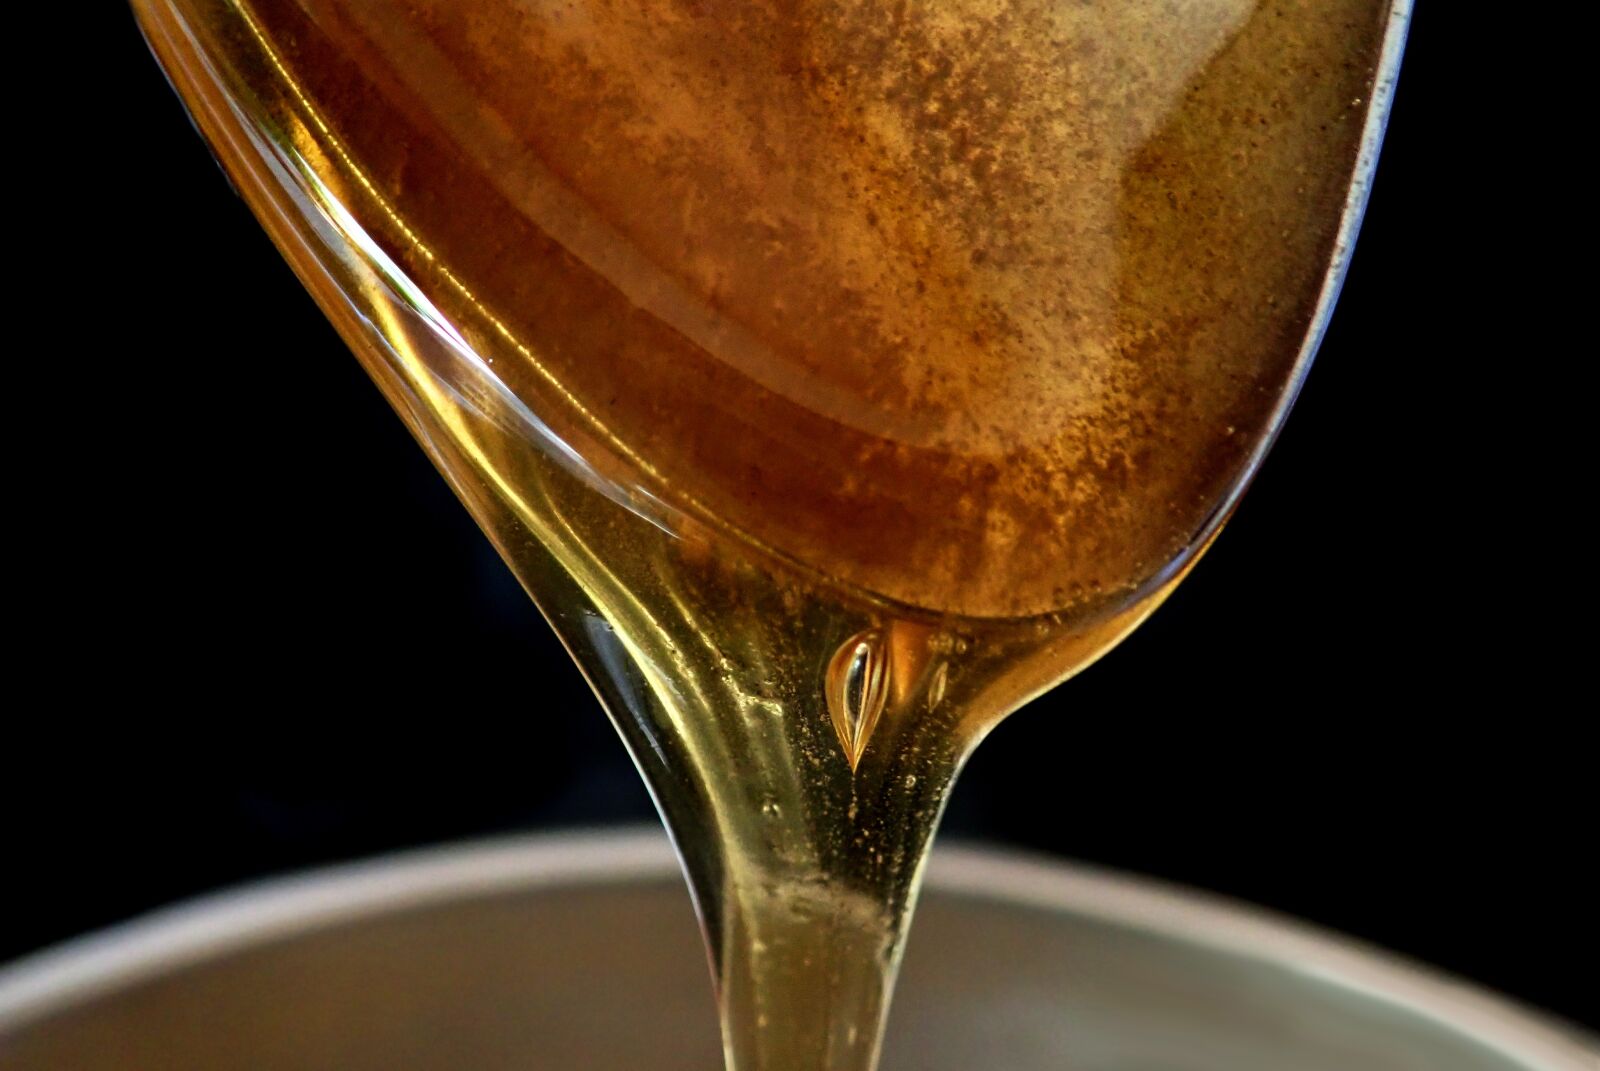 Olympus TG-5 sample photo. Honey, product, food photography